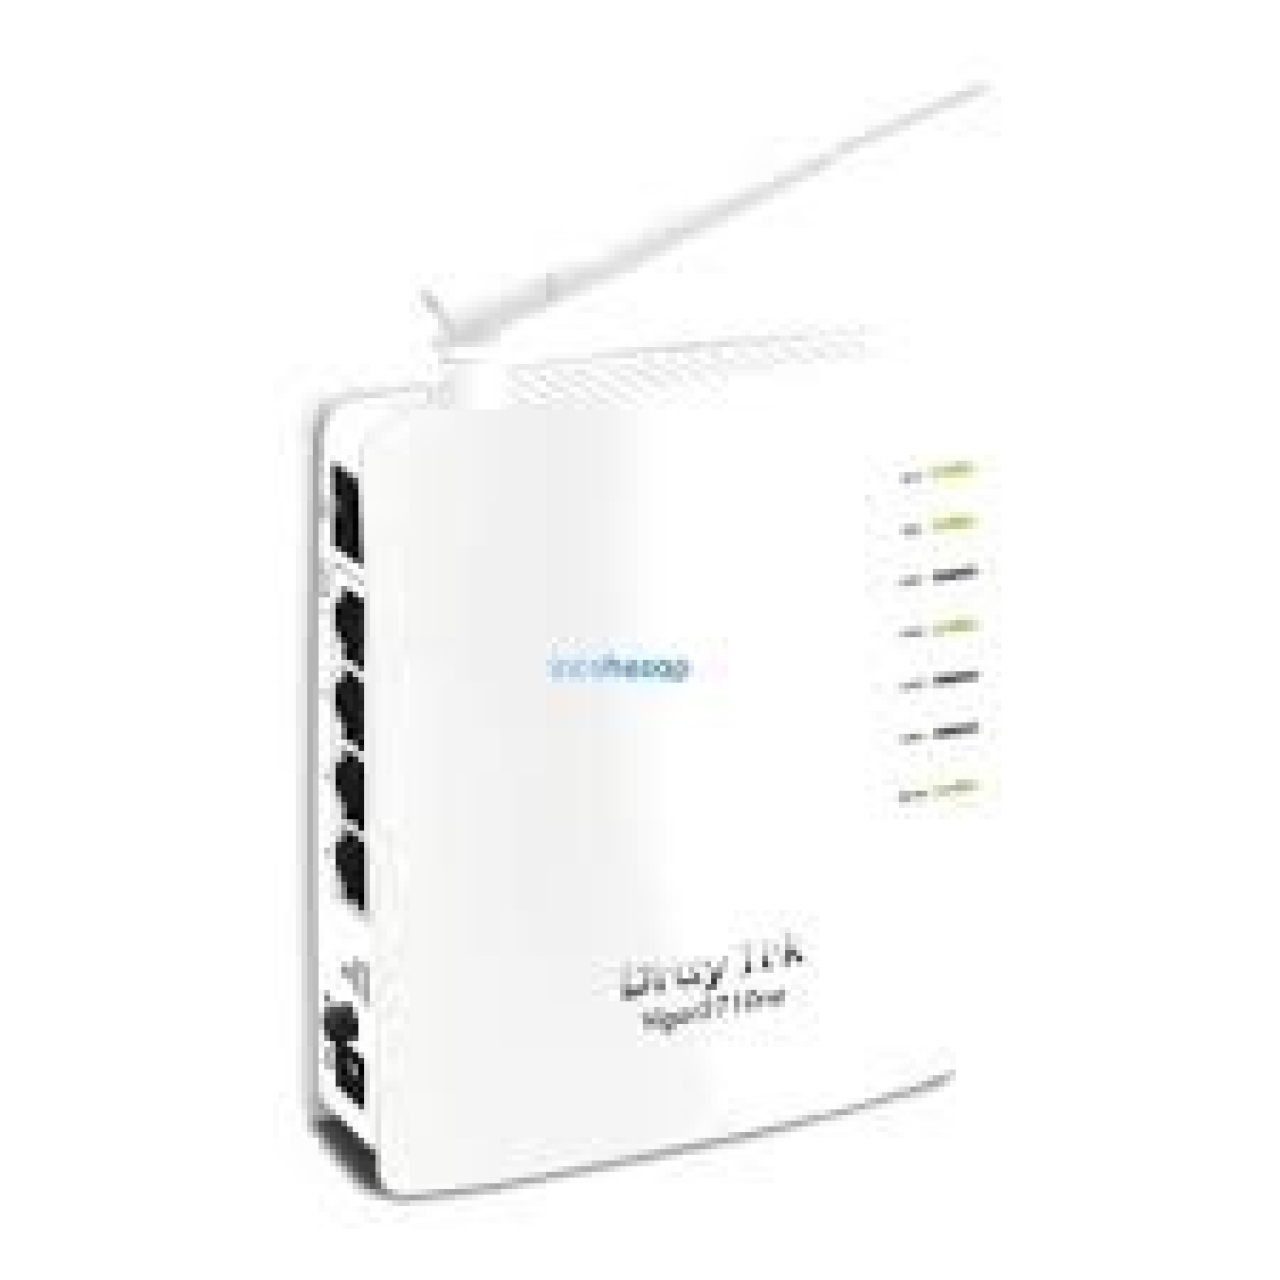 DRAYTEK Vigor 2710ne ADSL2+ Wireless Ekonomik Router Modem